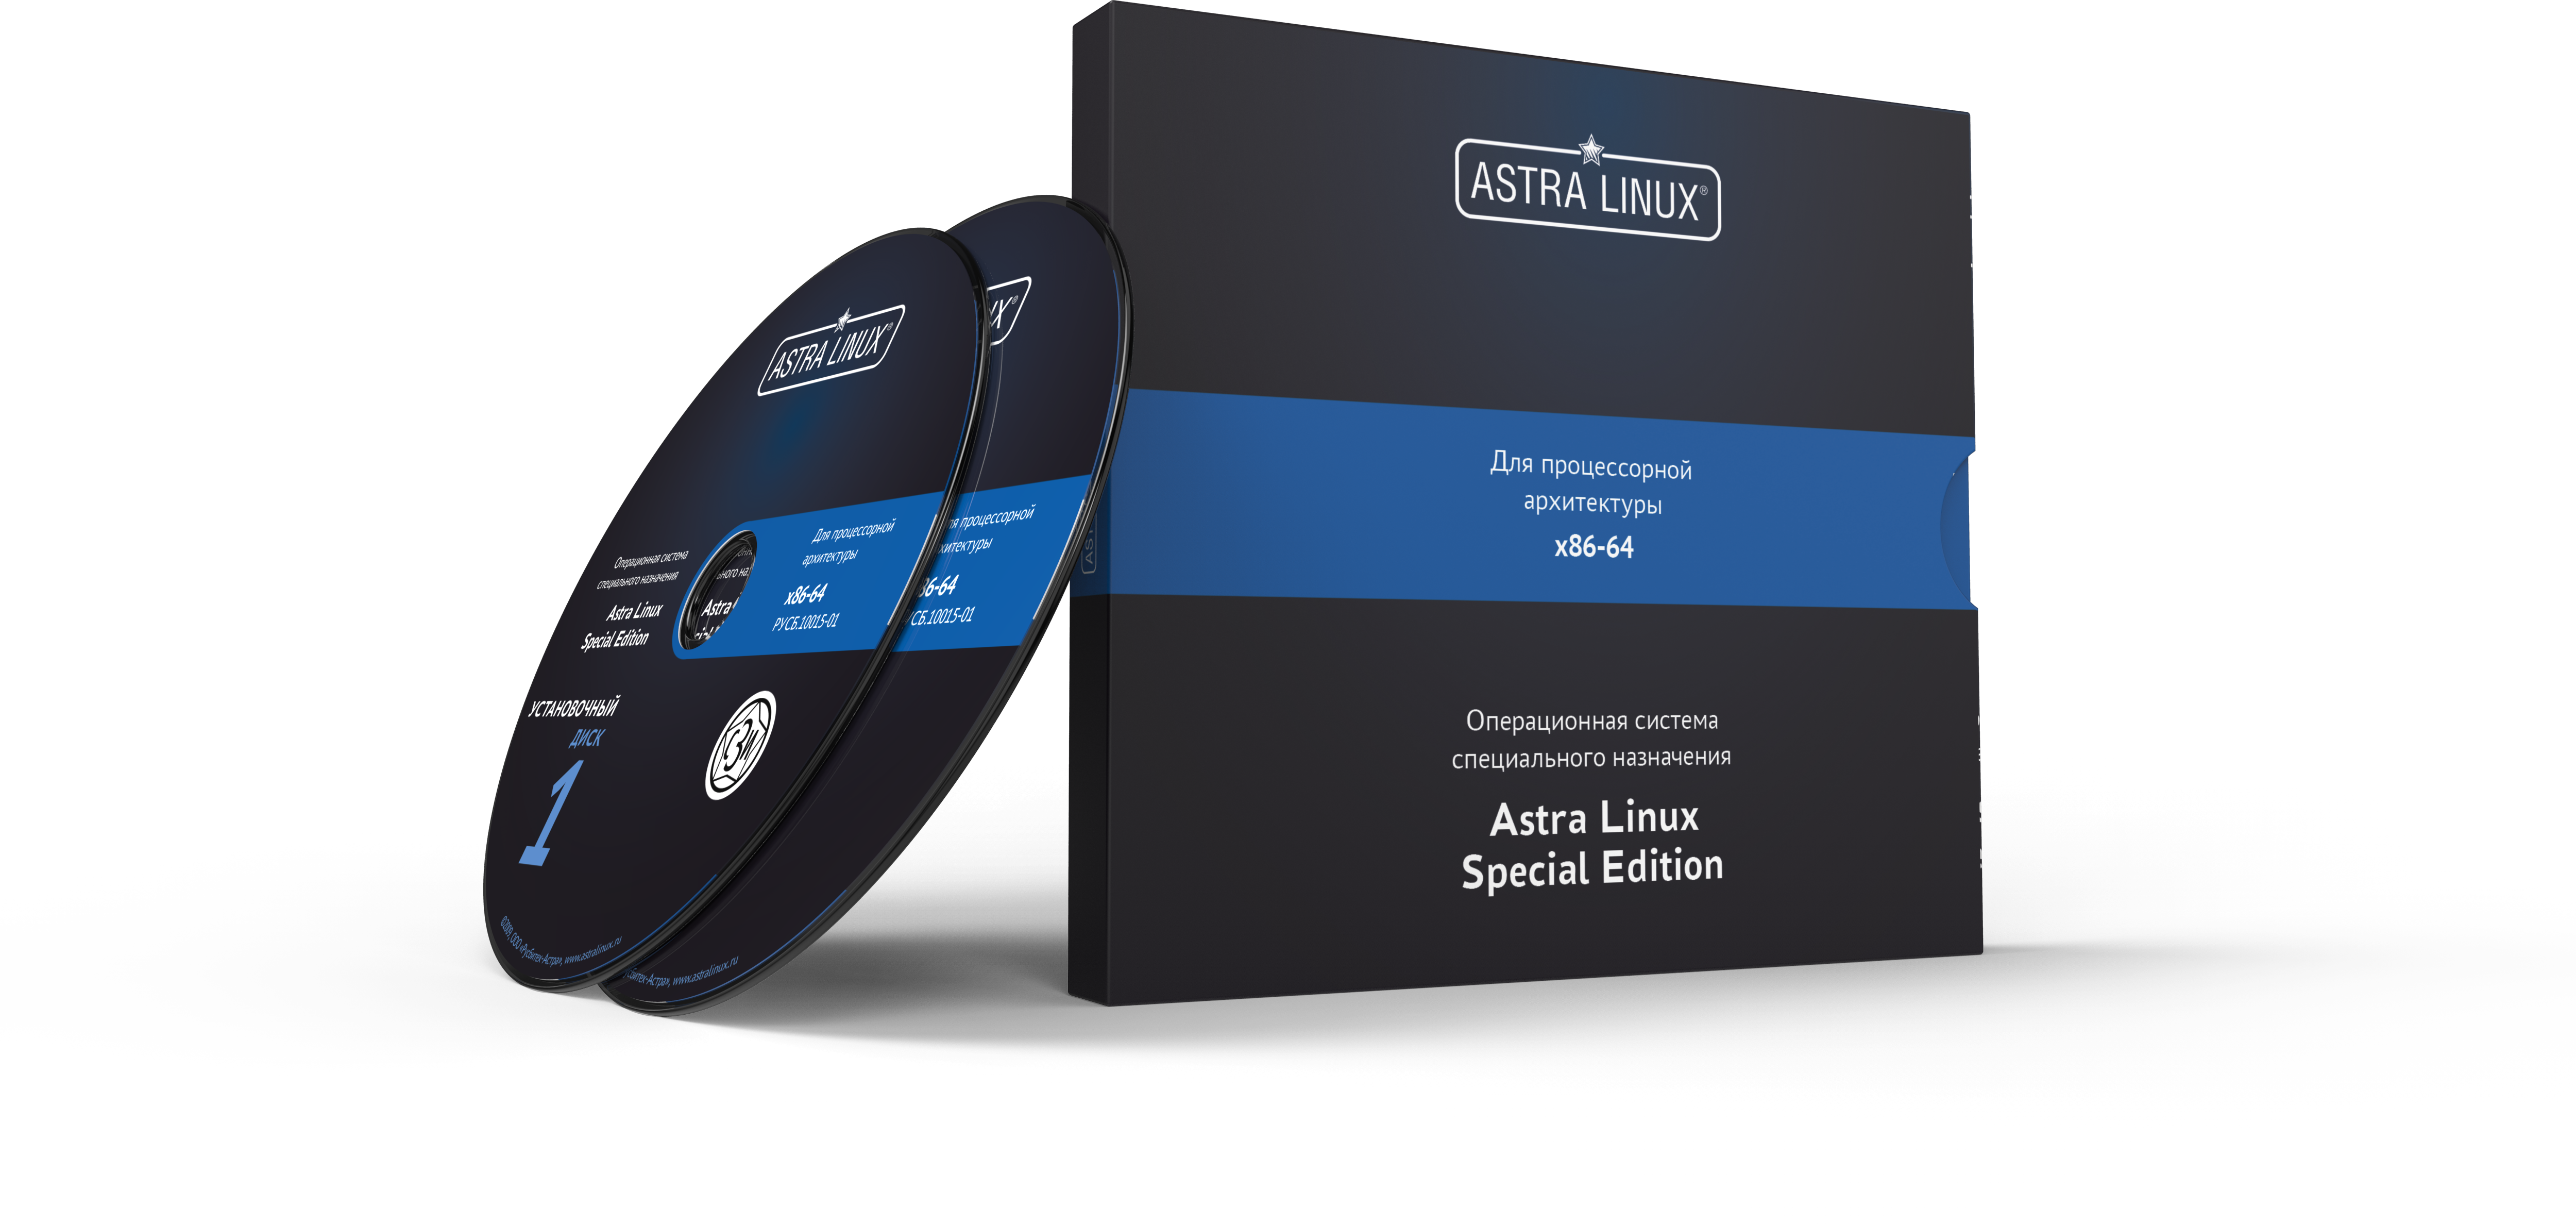 Сертификат ТП Astra Linux Special Edition - Орел, электронный, ТП "Привилегированная" на 36 мес.